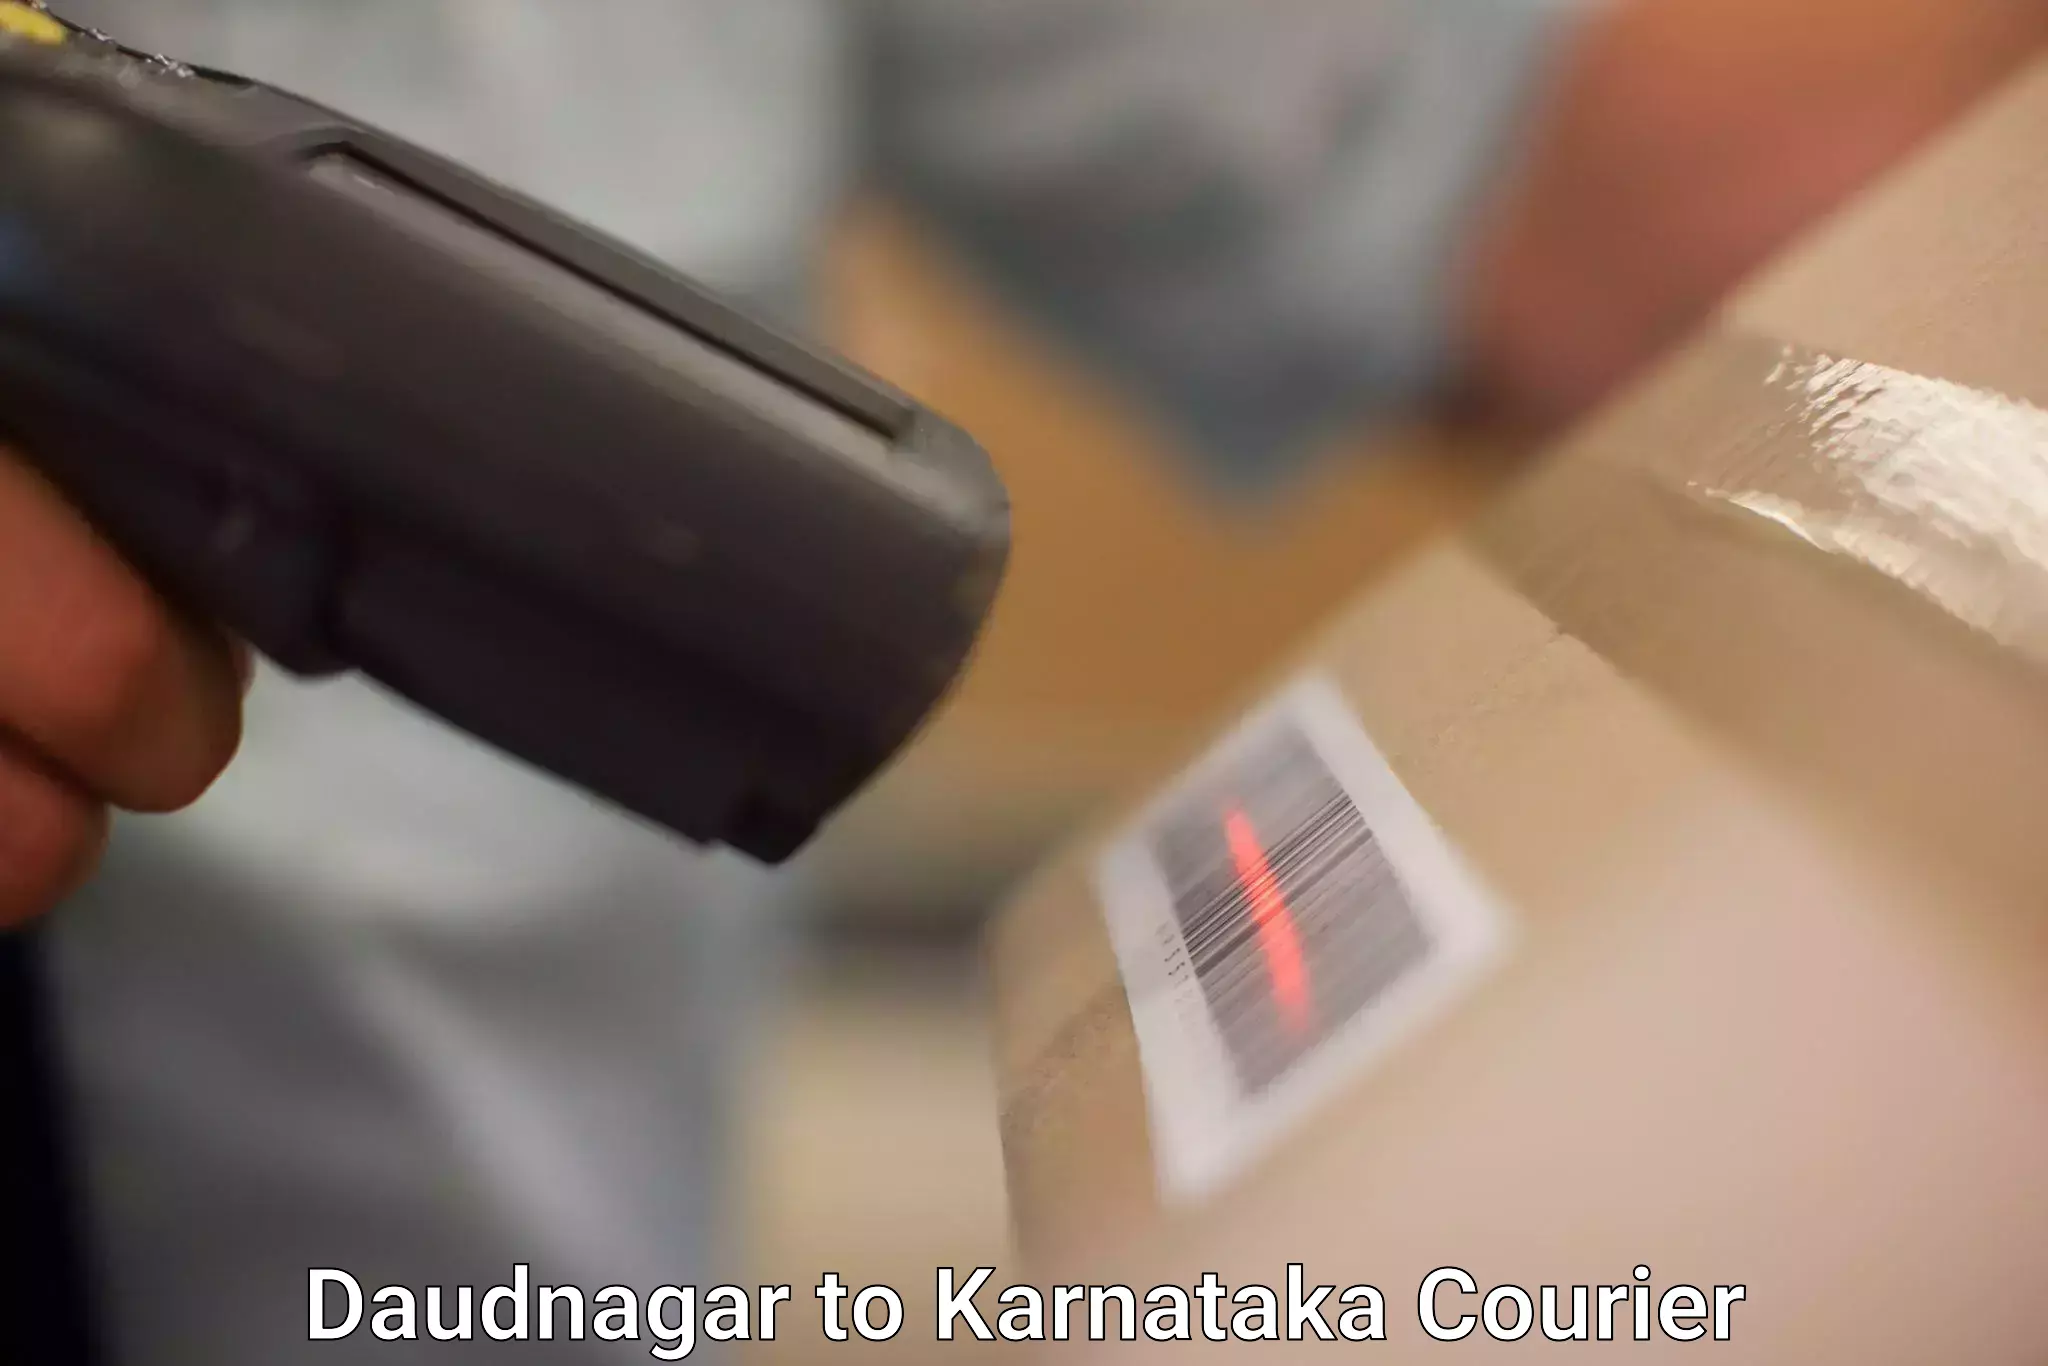 Professional parcel services Daudnagar to Kalaburagi